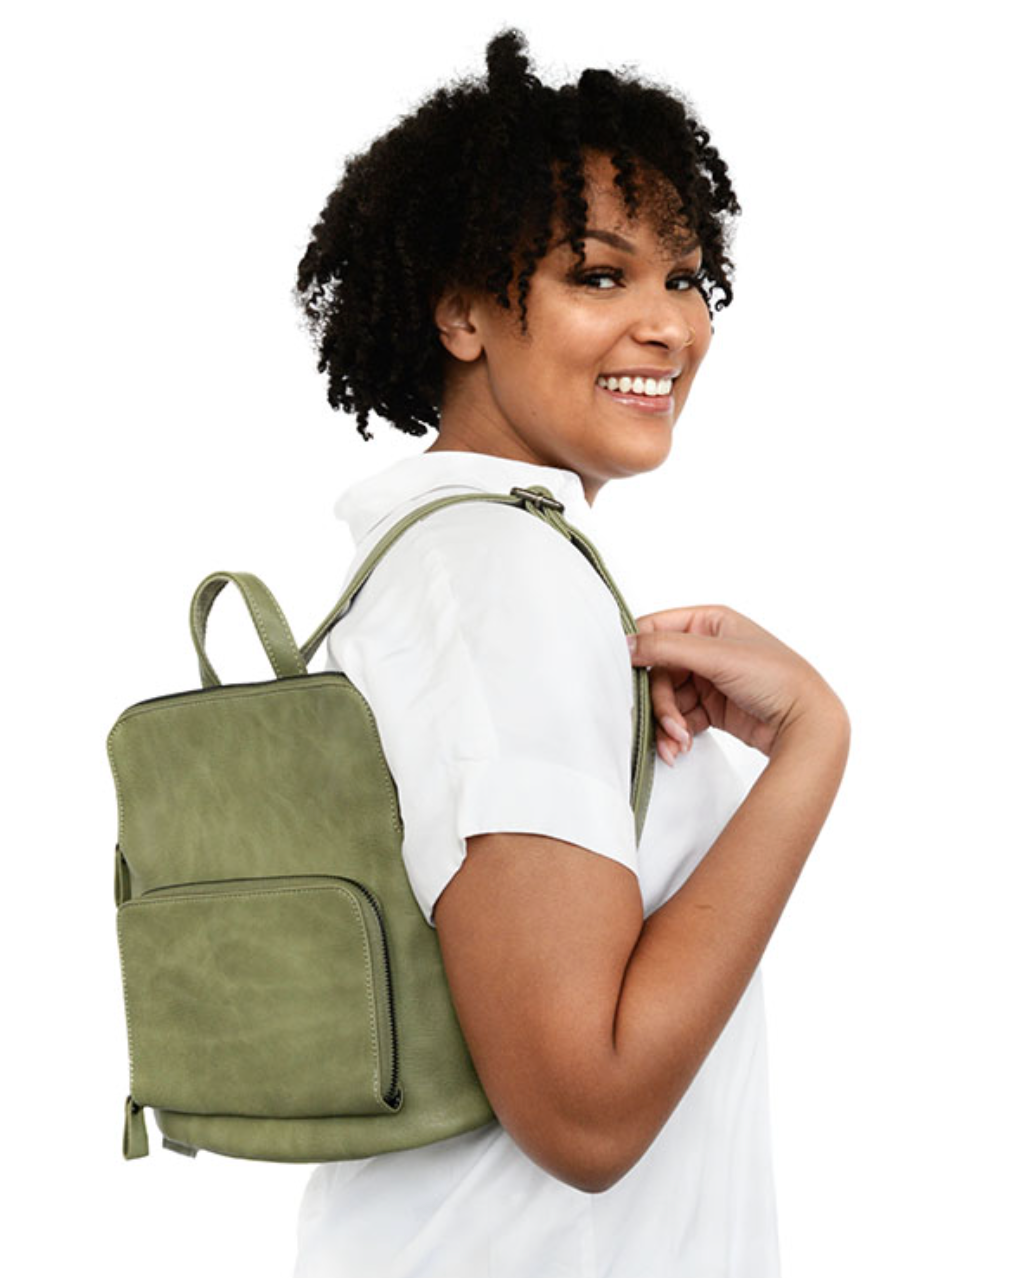 Julia Mini Backpack